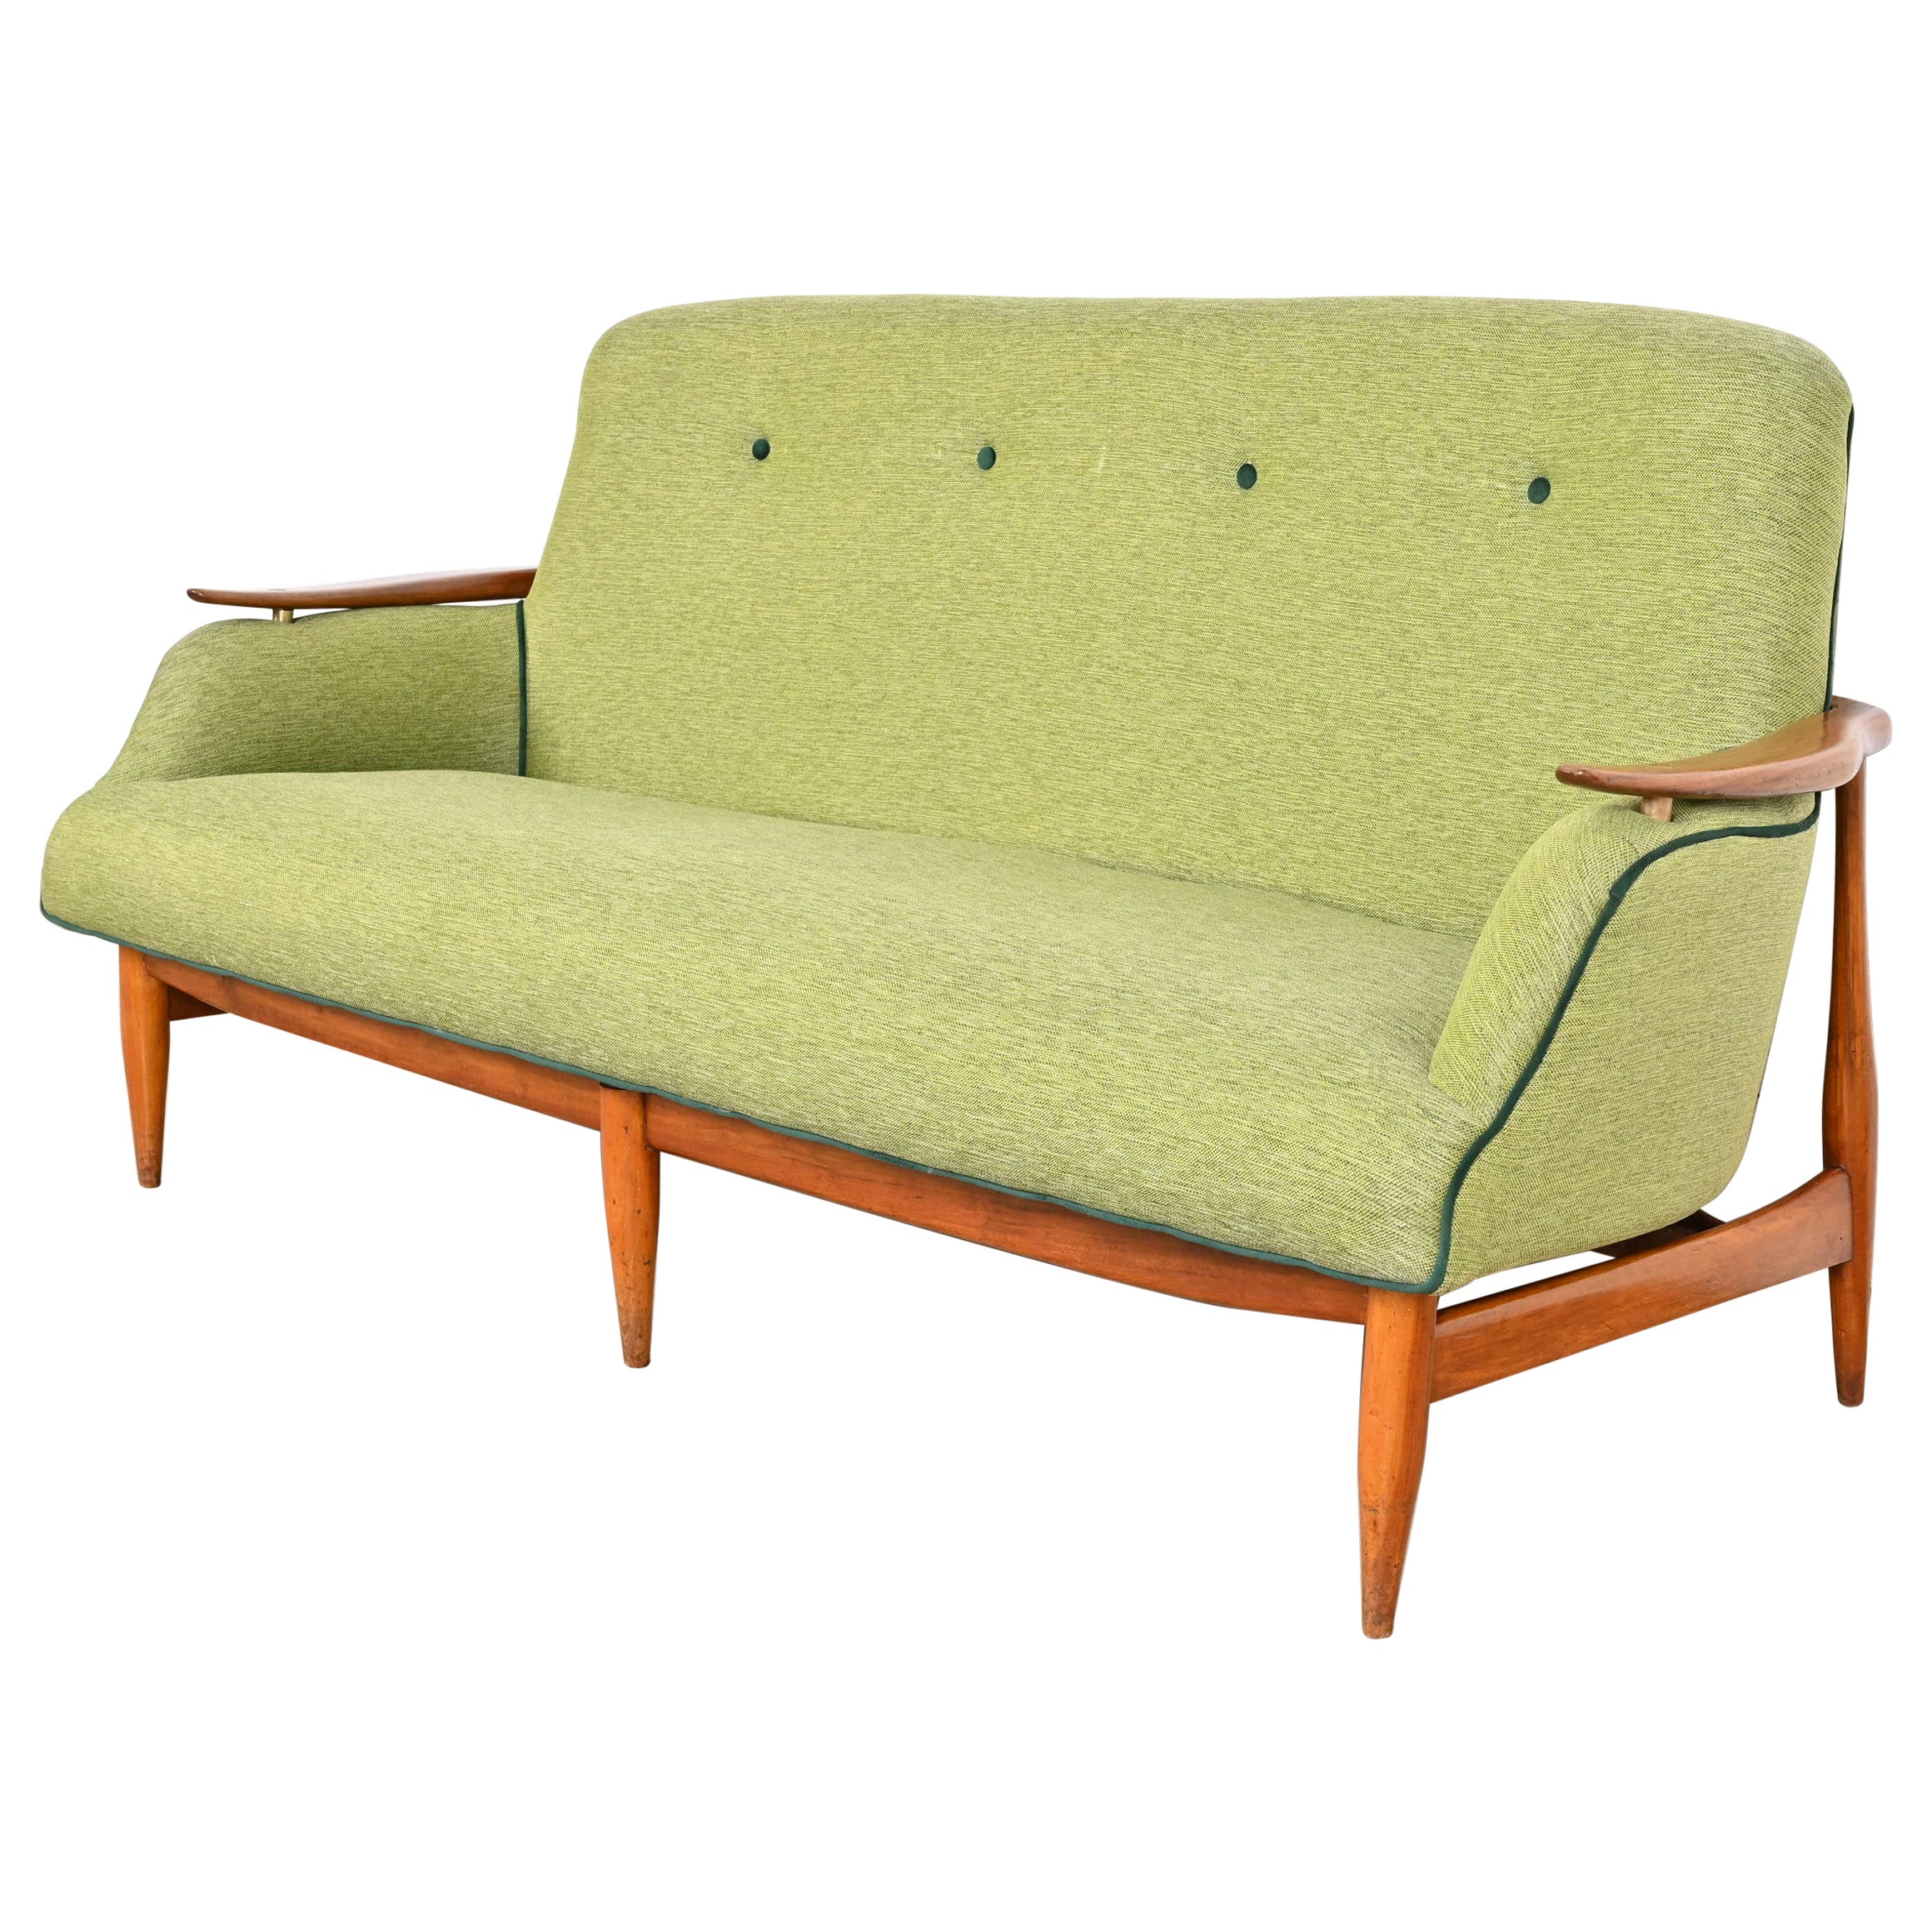 Finn Juhl Danish Modern Upholstered Sculpted Teak Sofa, 1950s For Sale